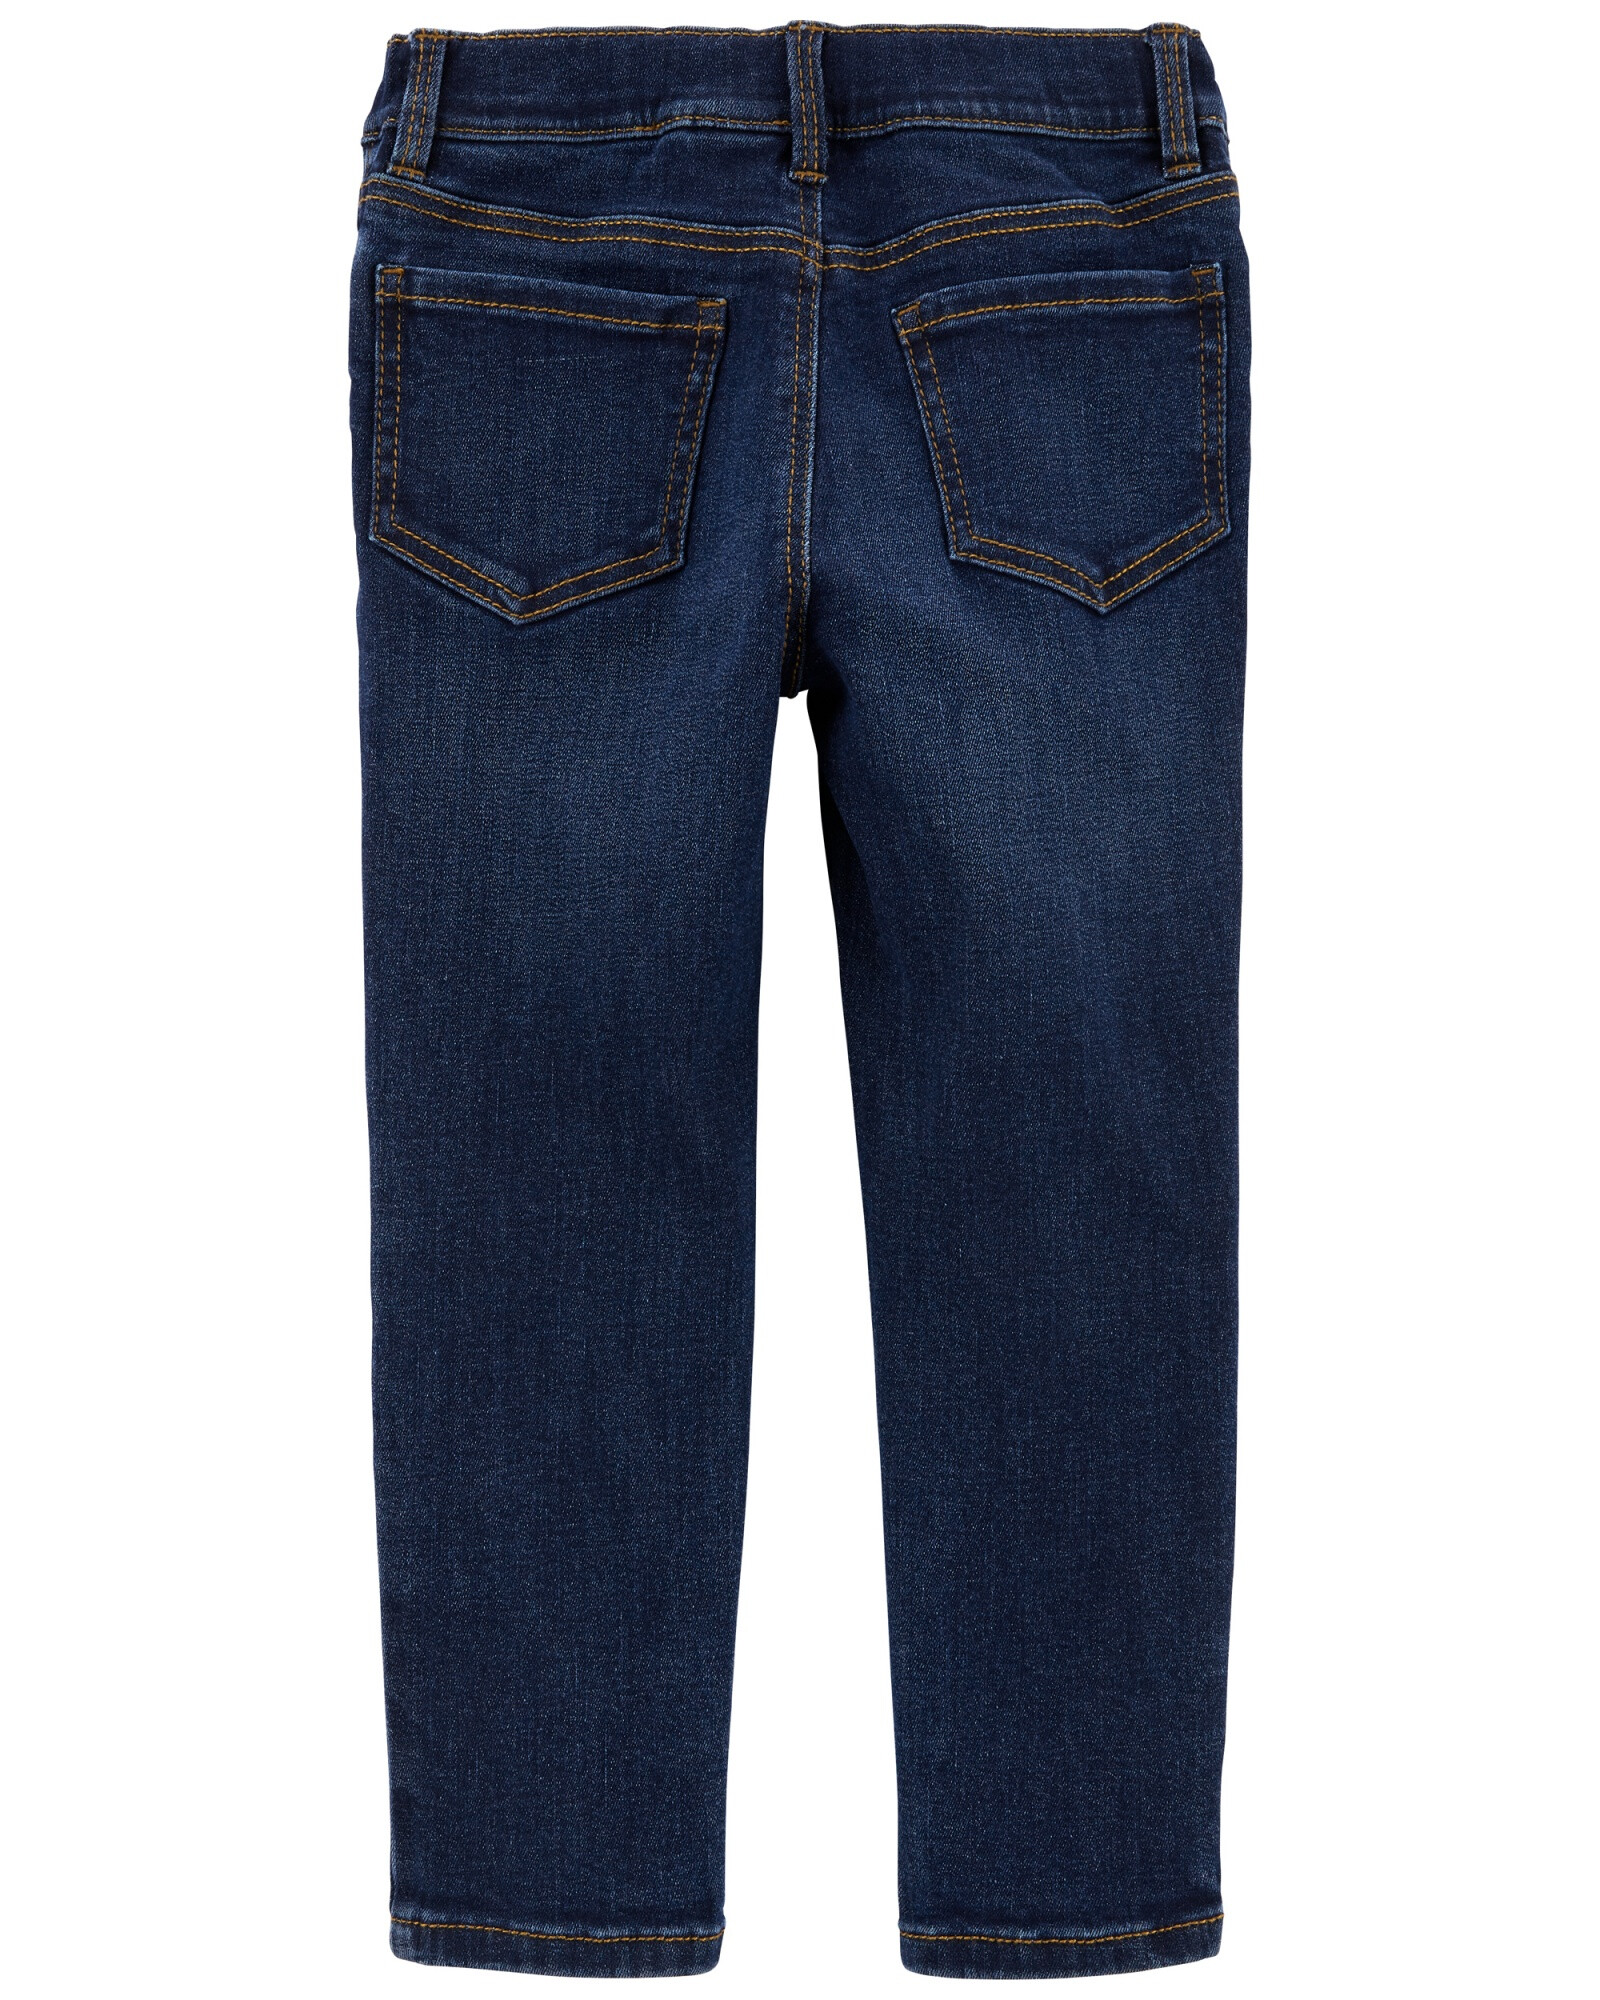 Pantalón de jean ajustados con botones. Talles 2-5T Sin color